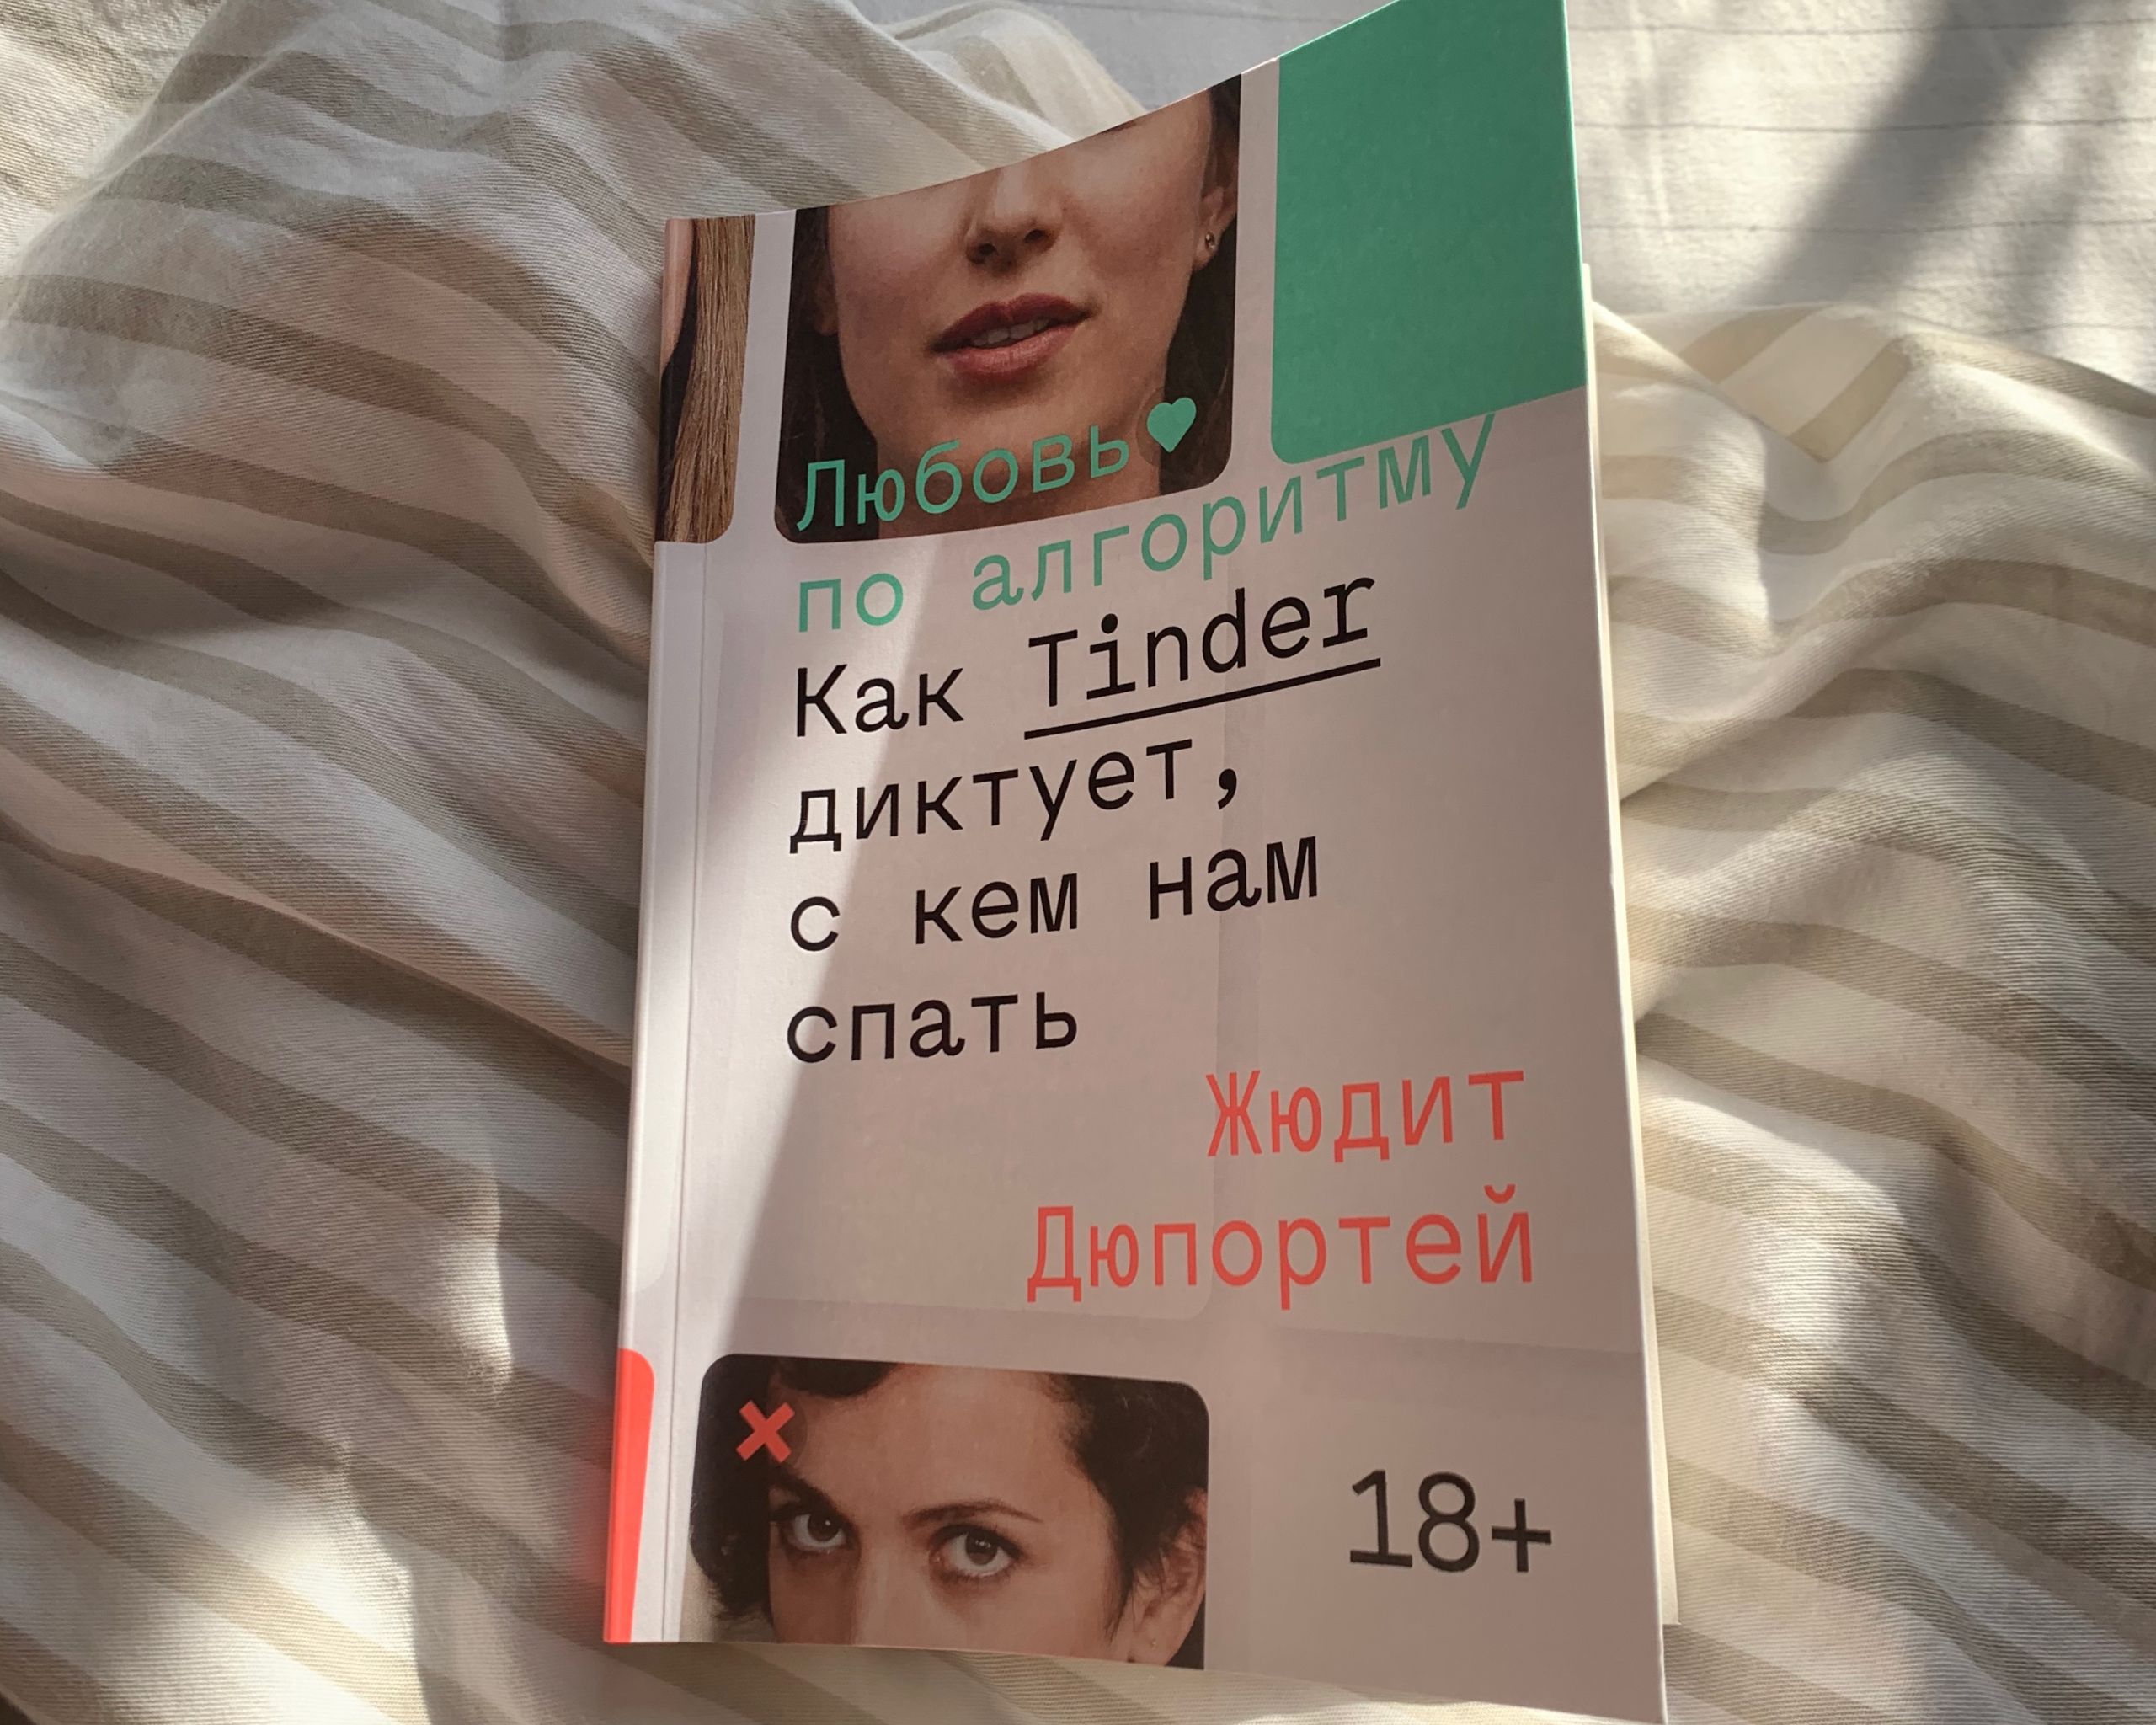 обложка книги Жюдит Дюпортей «Любовь по алгоритму. Как Tinder диктует, с кем нам спать»